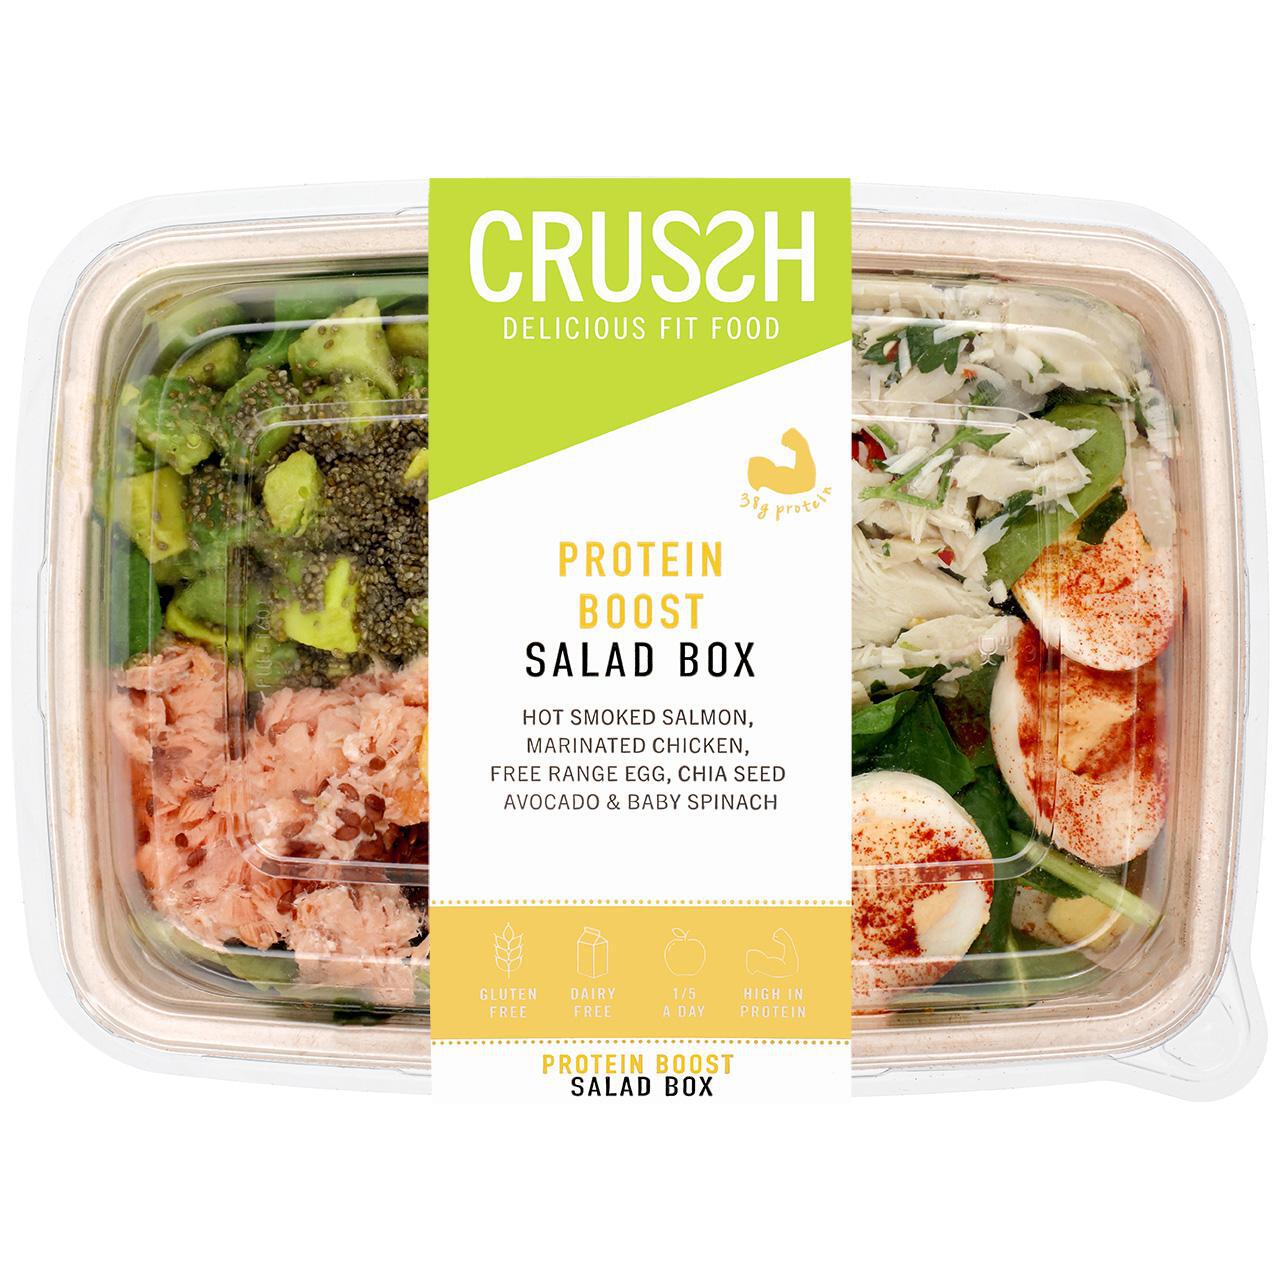 Crussh Protein Boost Salad Box 337g